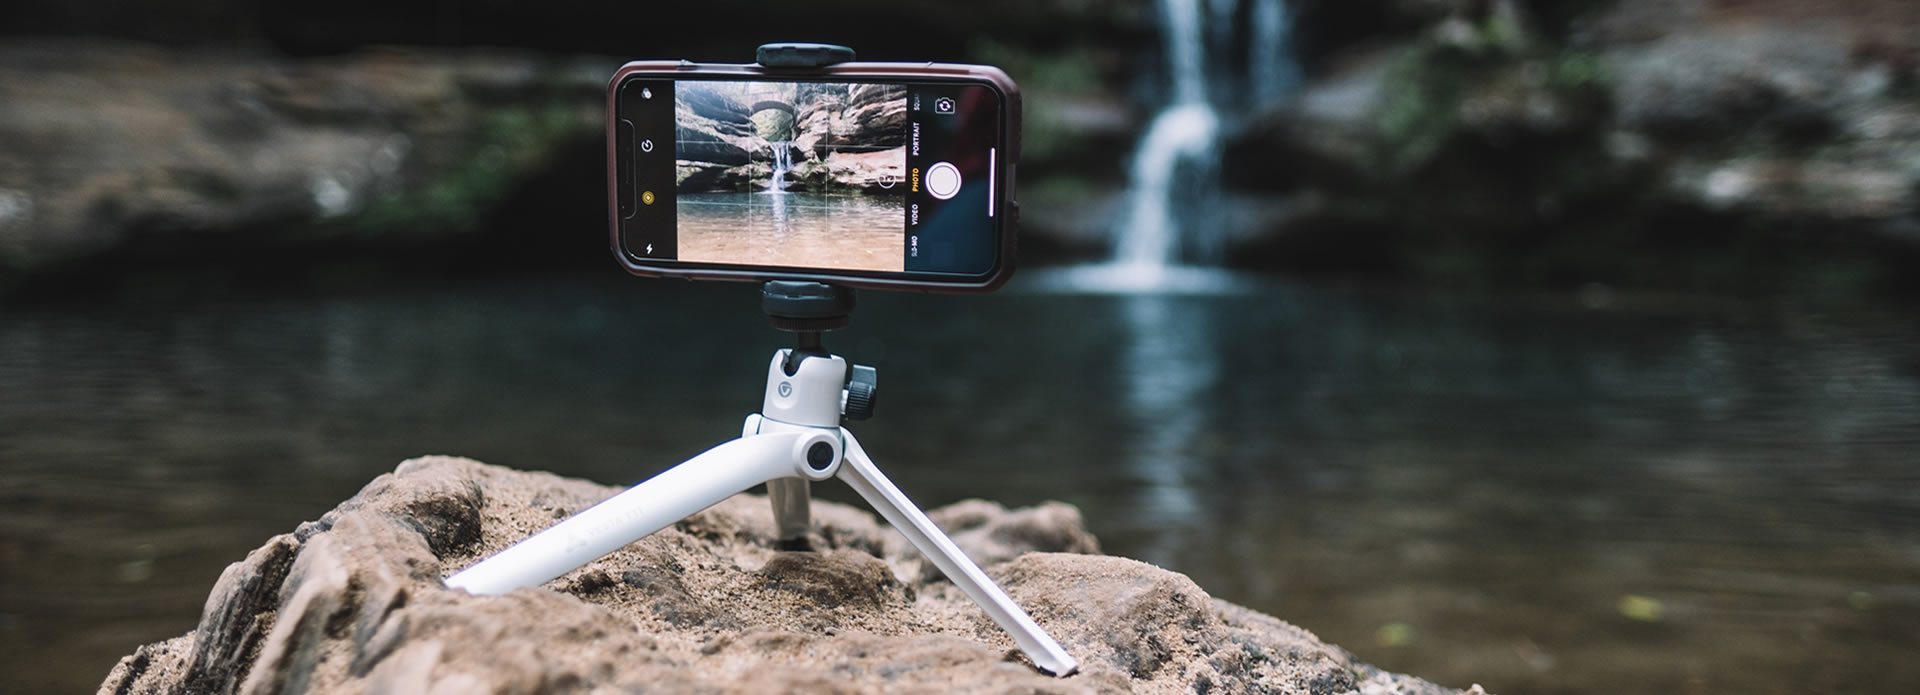 Mini treppiede per smartphone con un telefono cellulare in cima a scattare una foto di una cascata